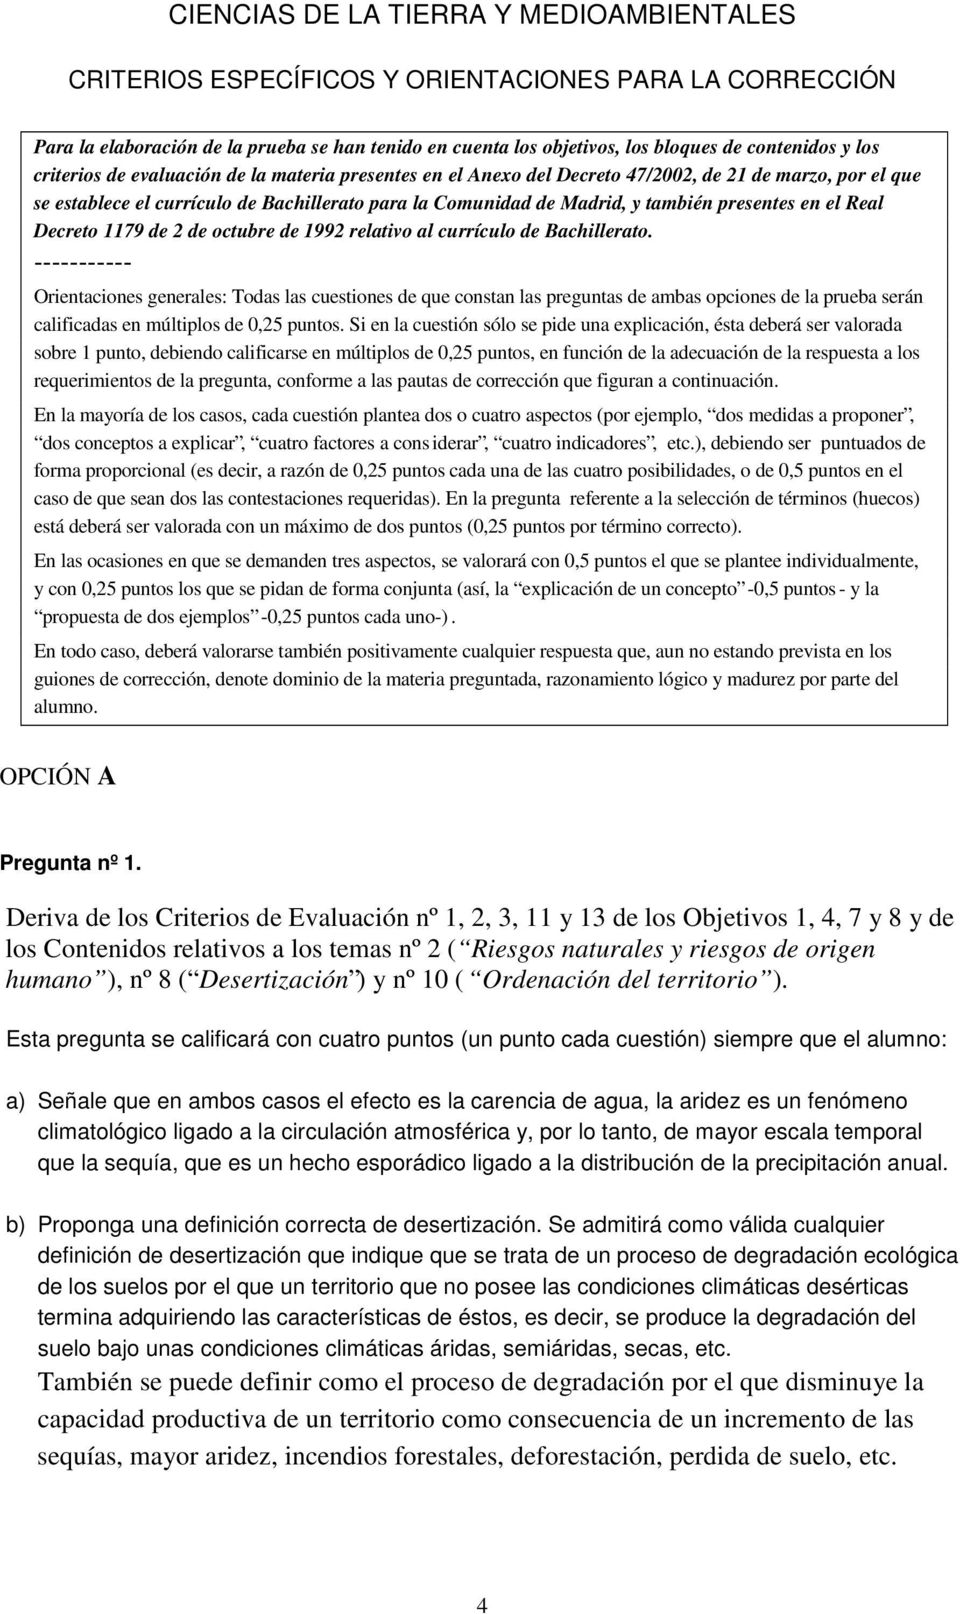 presentes en el Real Decreto 1179 de 2 de octubre de 1992 relativo al currículo de Bachillerato.